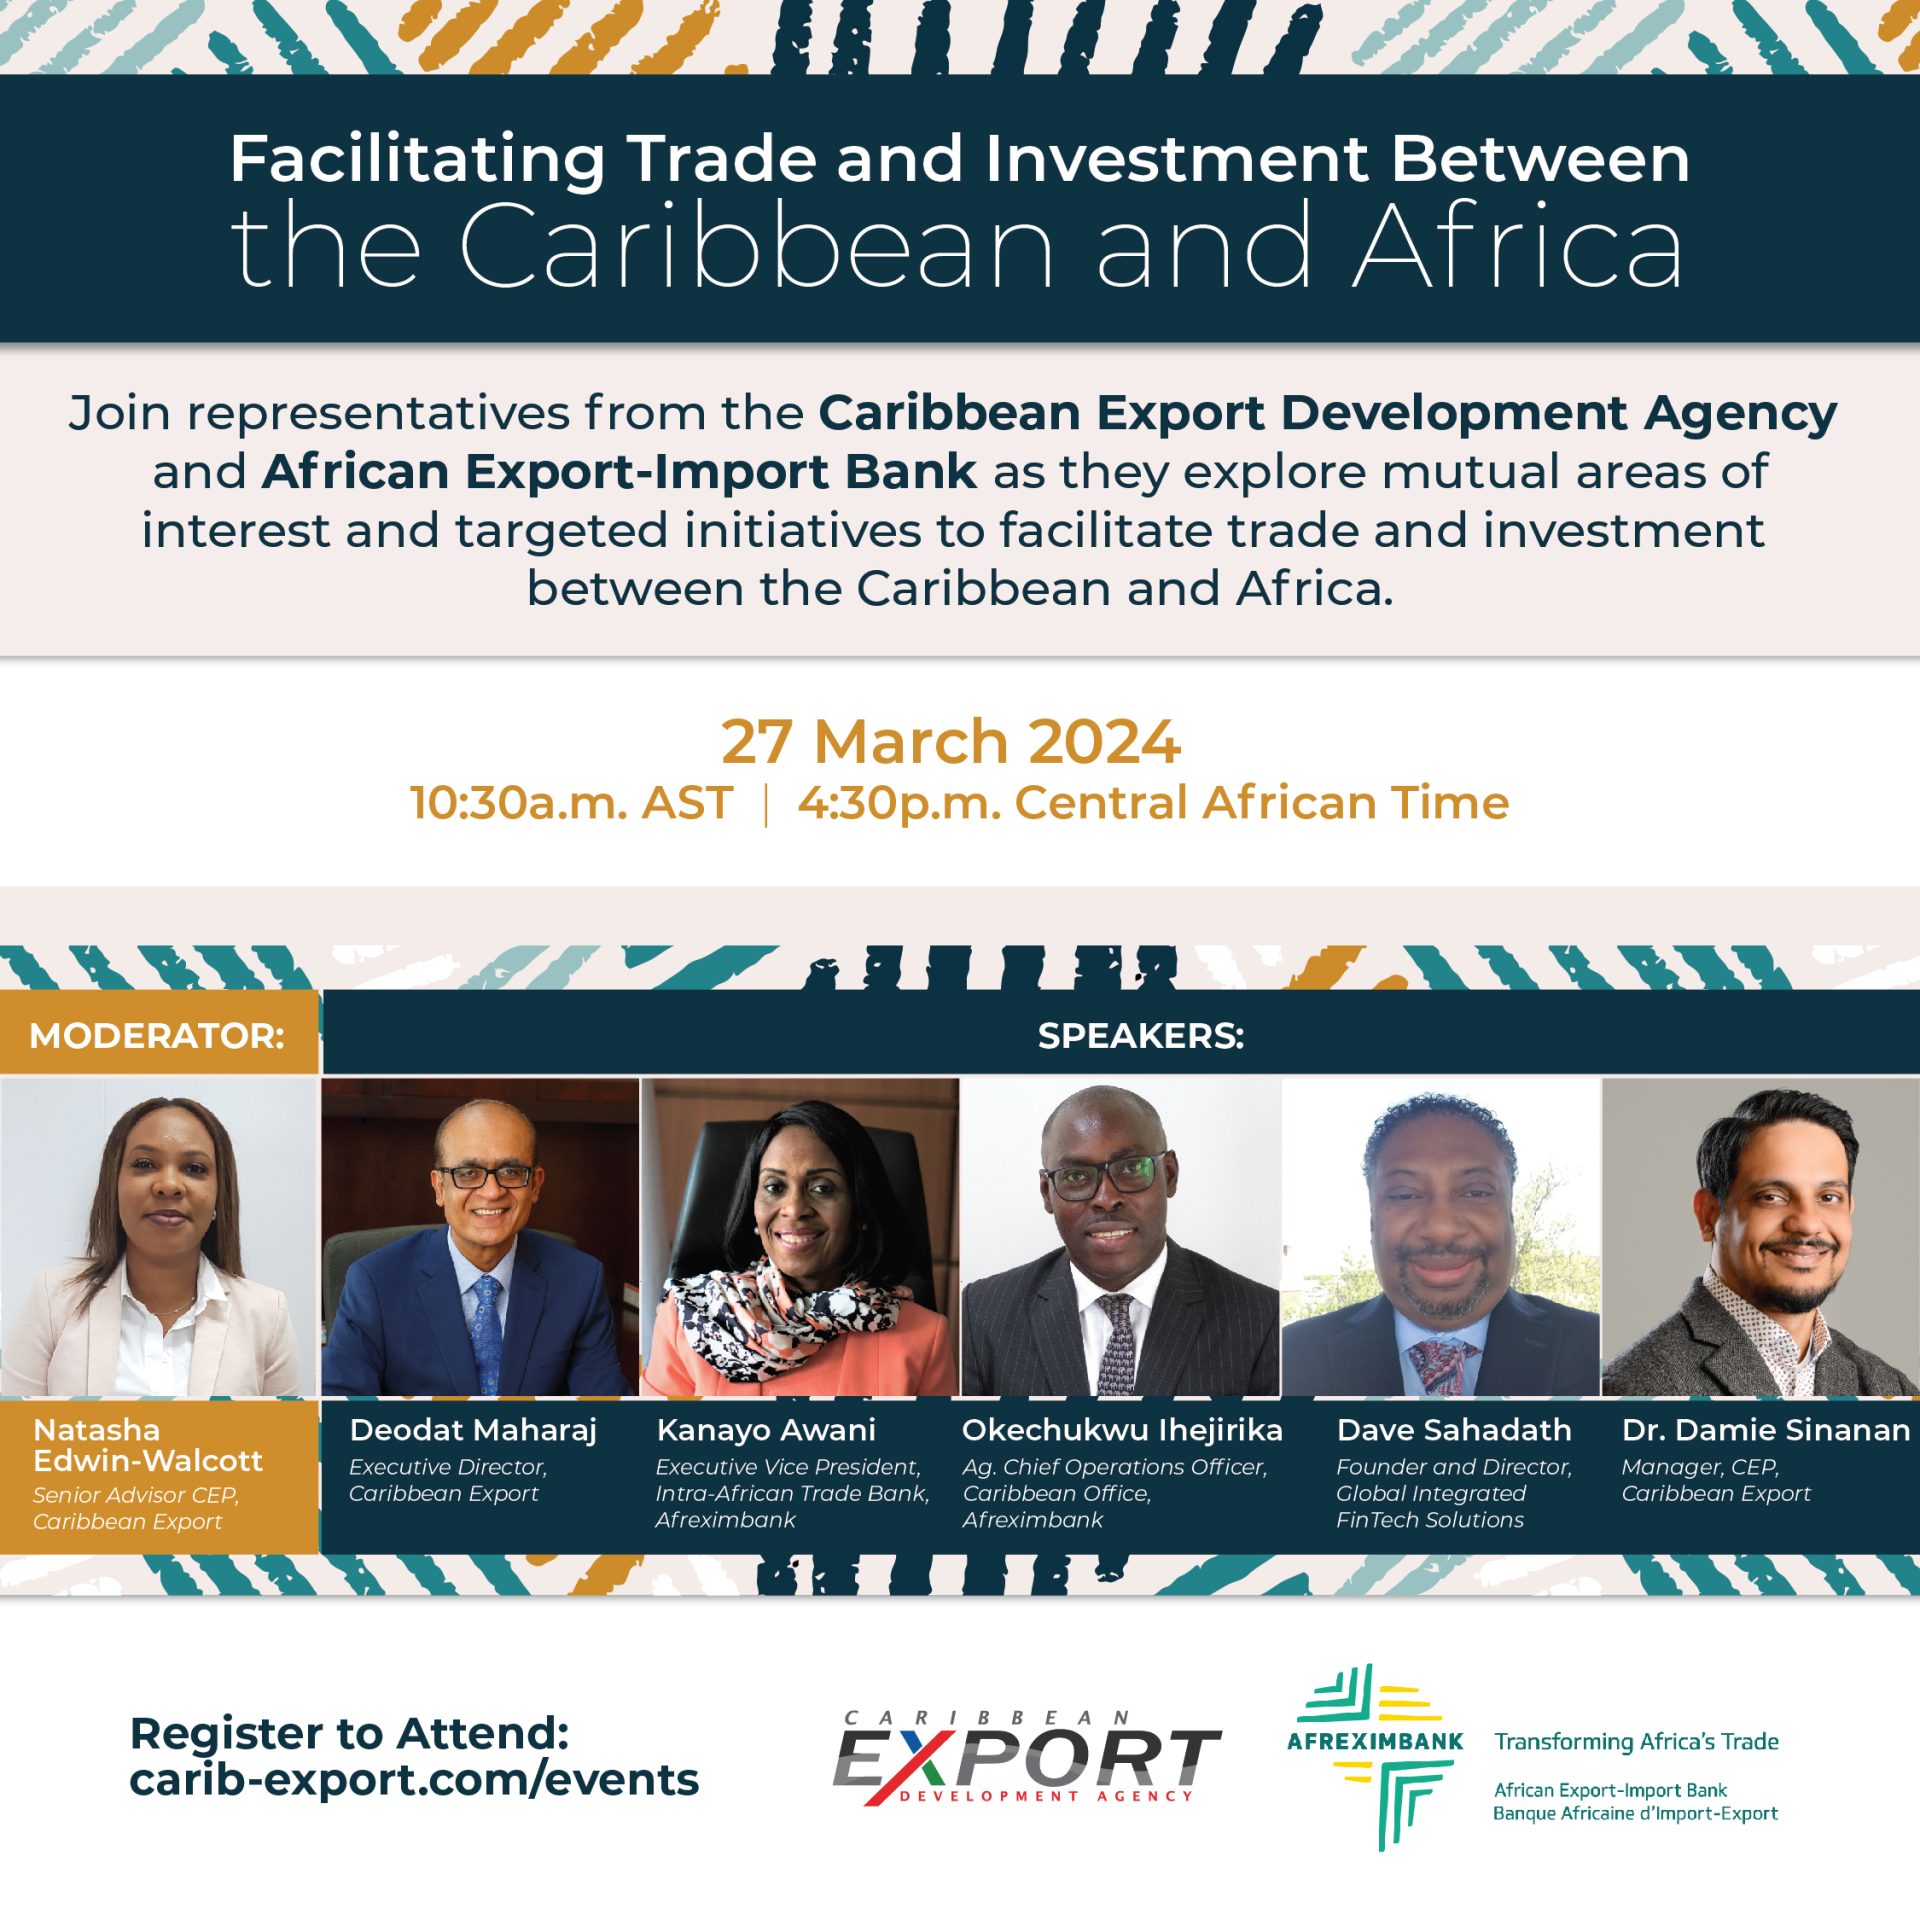 Handel en investeringen tussen het Caribisch gebied en Afrika vergemakkelijken